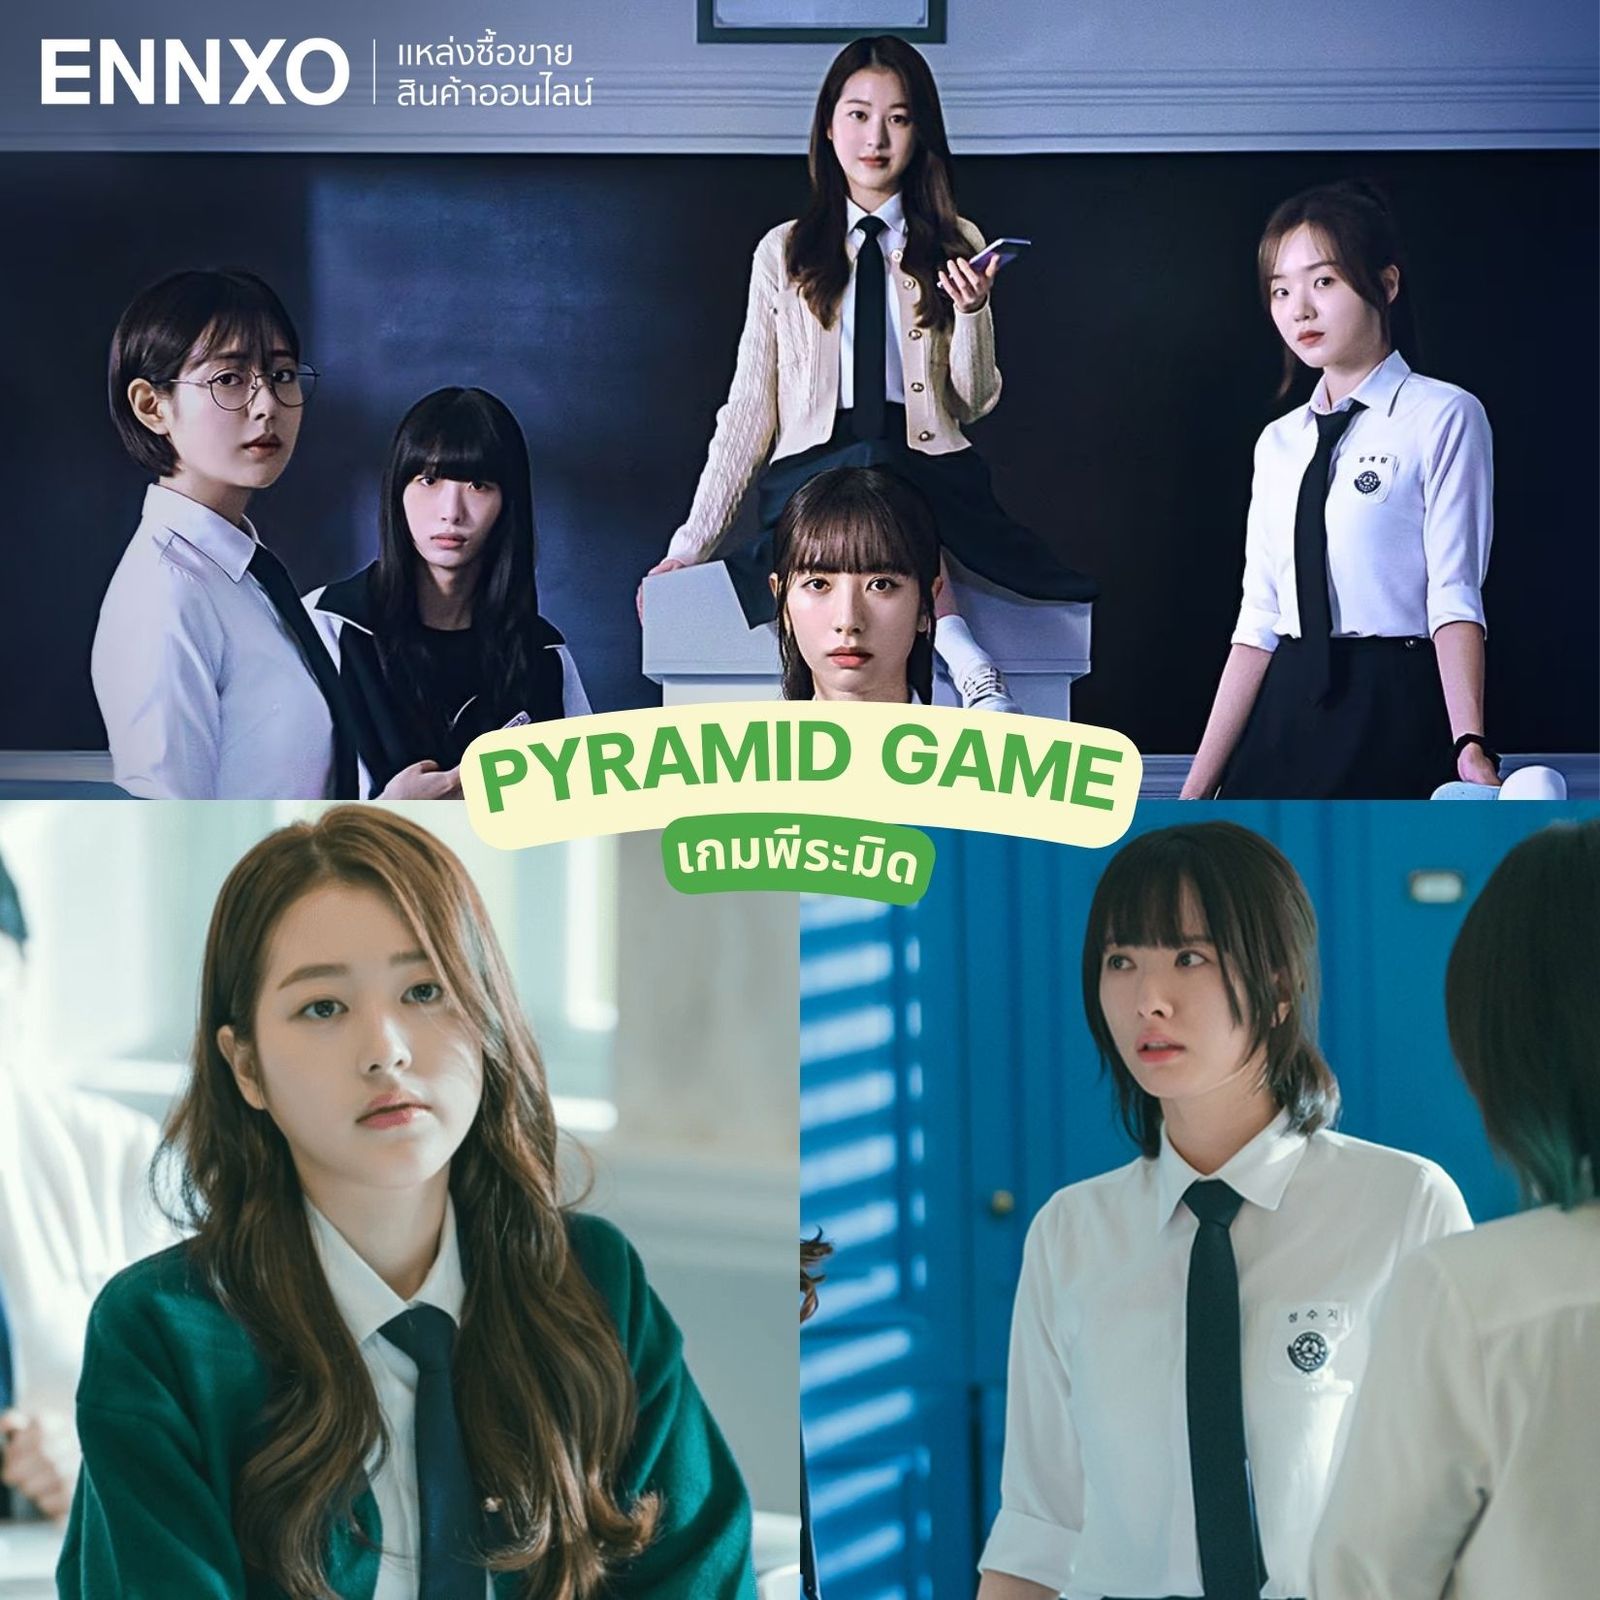 เกมพีระมิด Pyramid Game ซีรีย์เกาหลีโรงเรียน